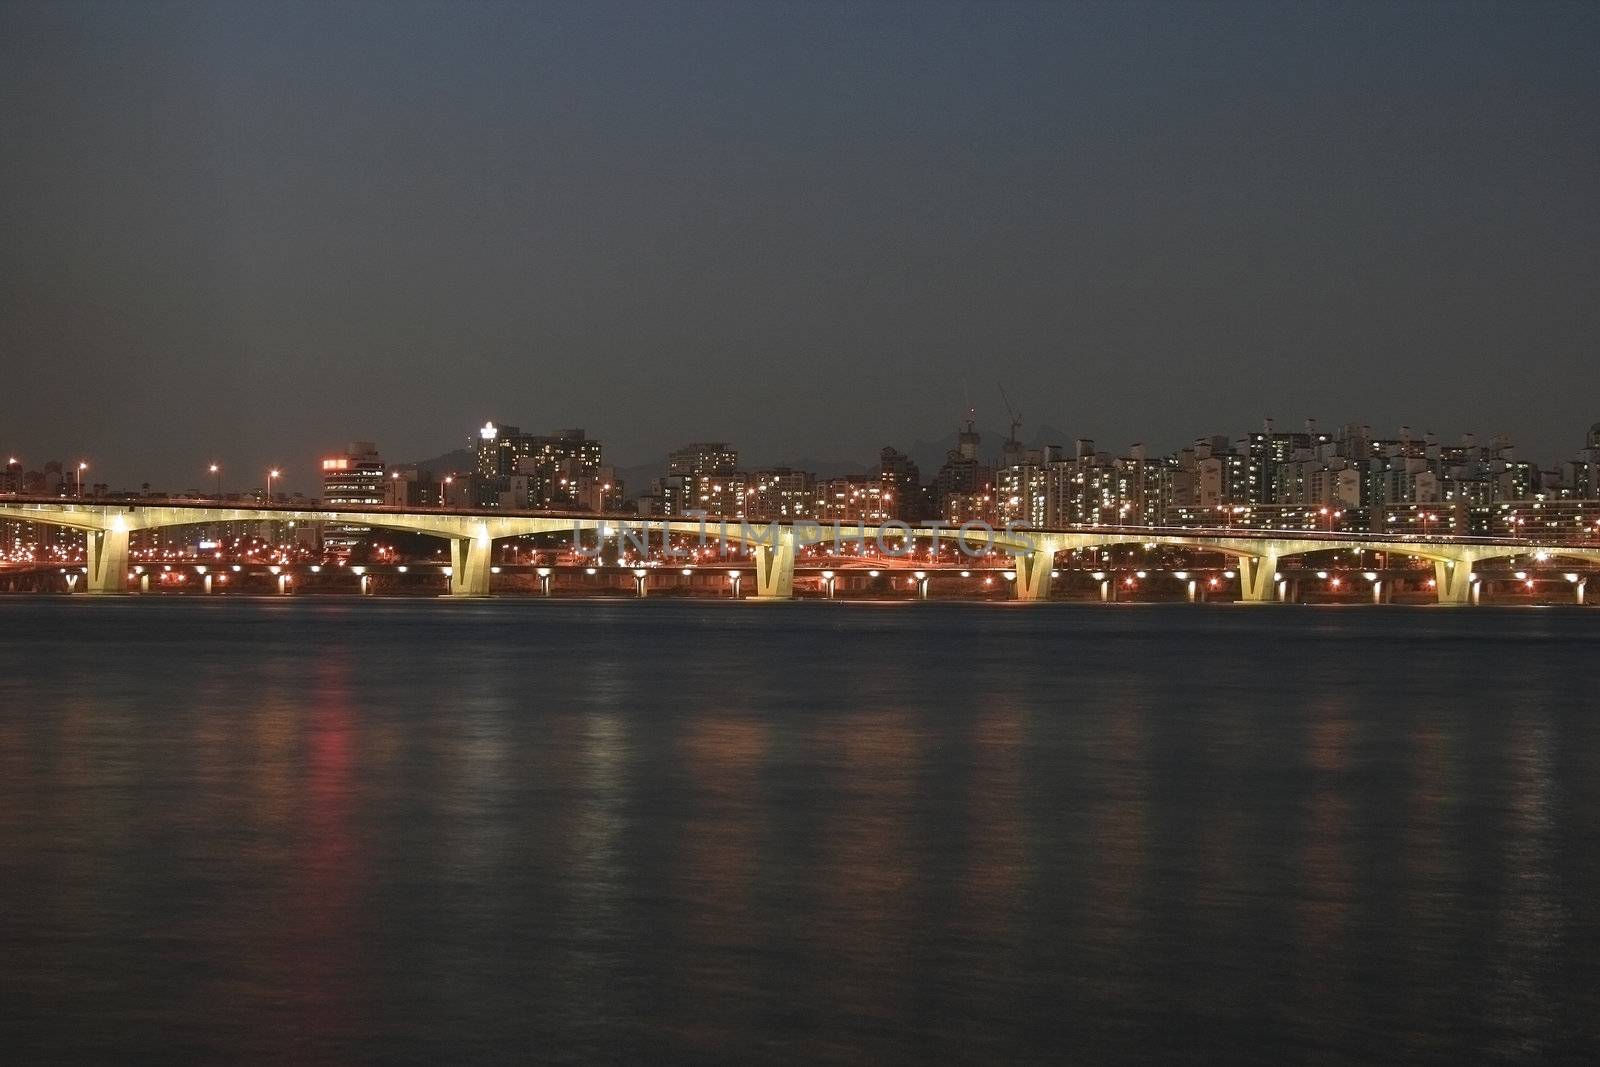 Seoul Han River at Night by sacatani